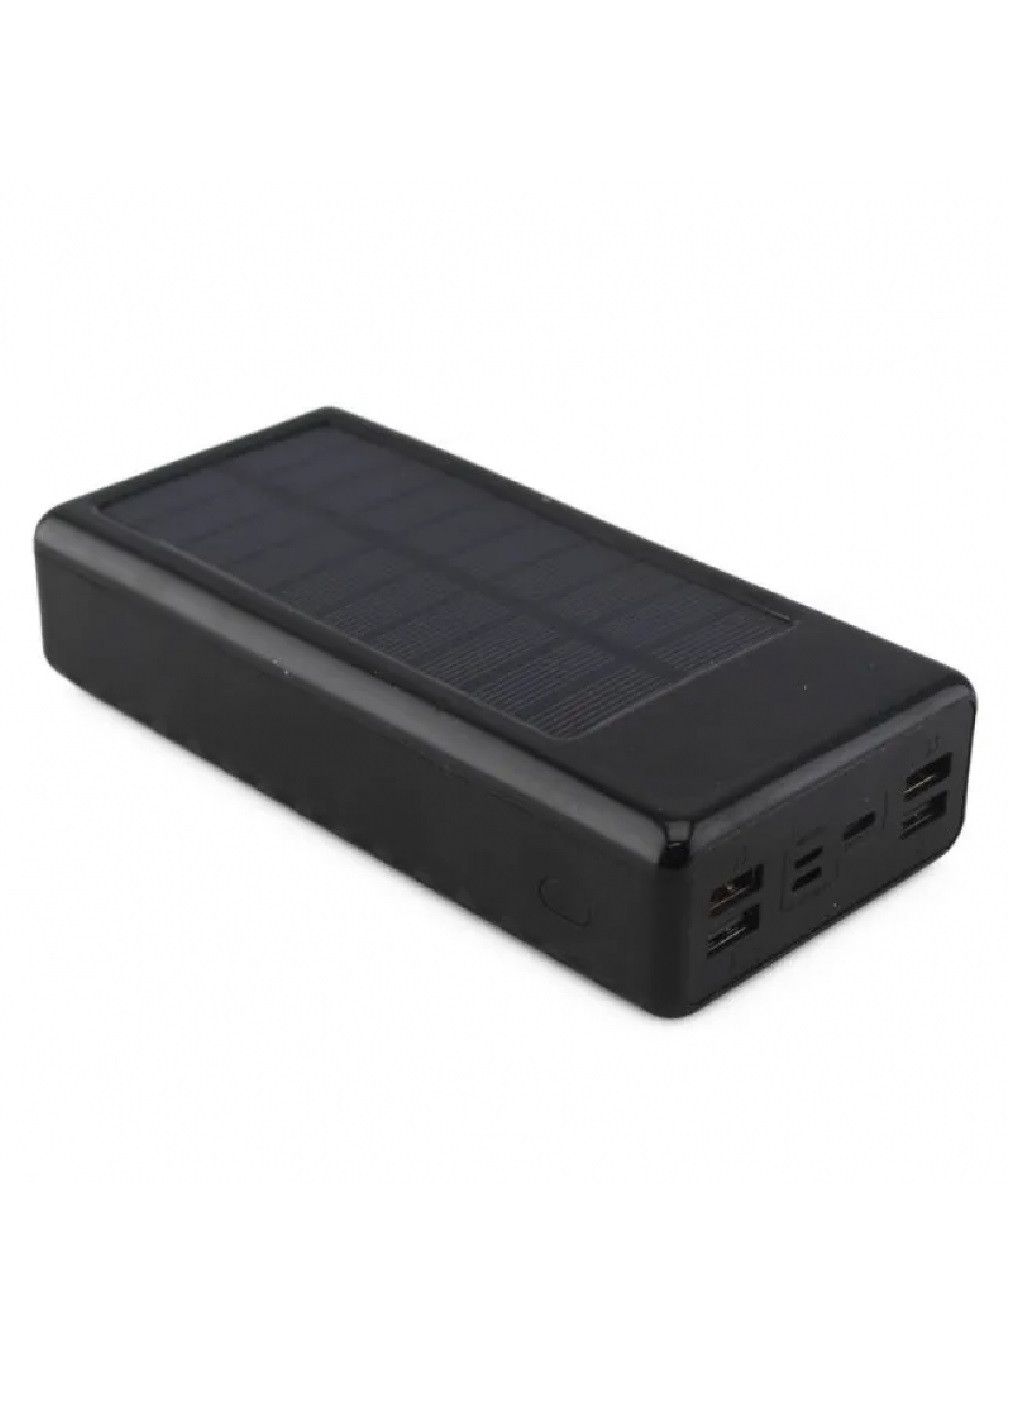 Power Bank универсальное зарядное устройство батарея внешний аккумулятор с солнечной панелью 20000 Mah (475042-Prob) Черный (павербанк) Unbranded